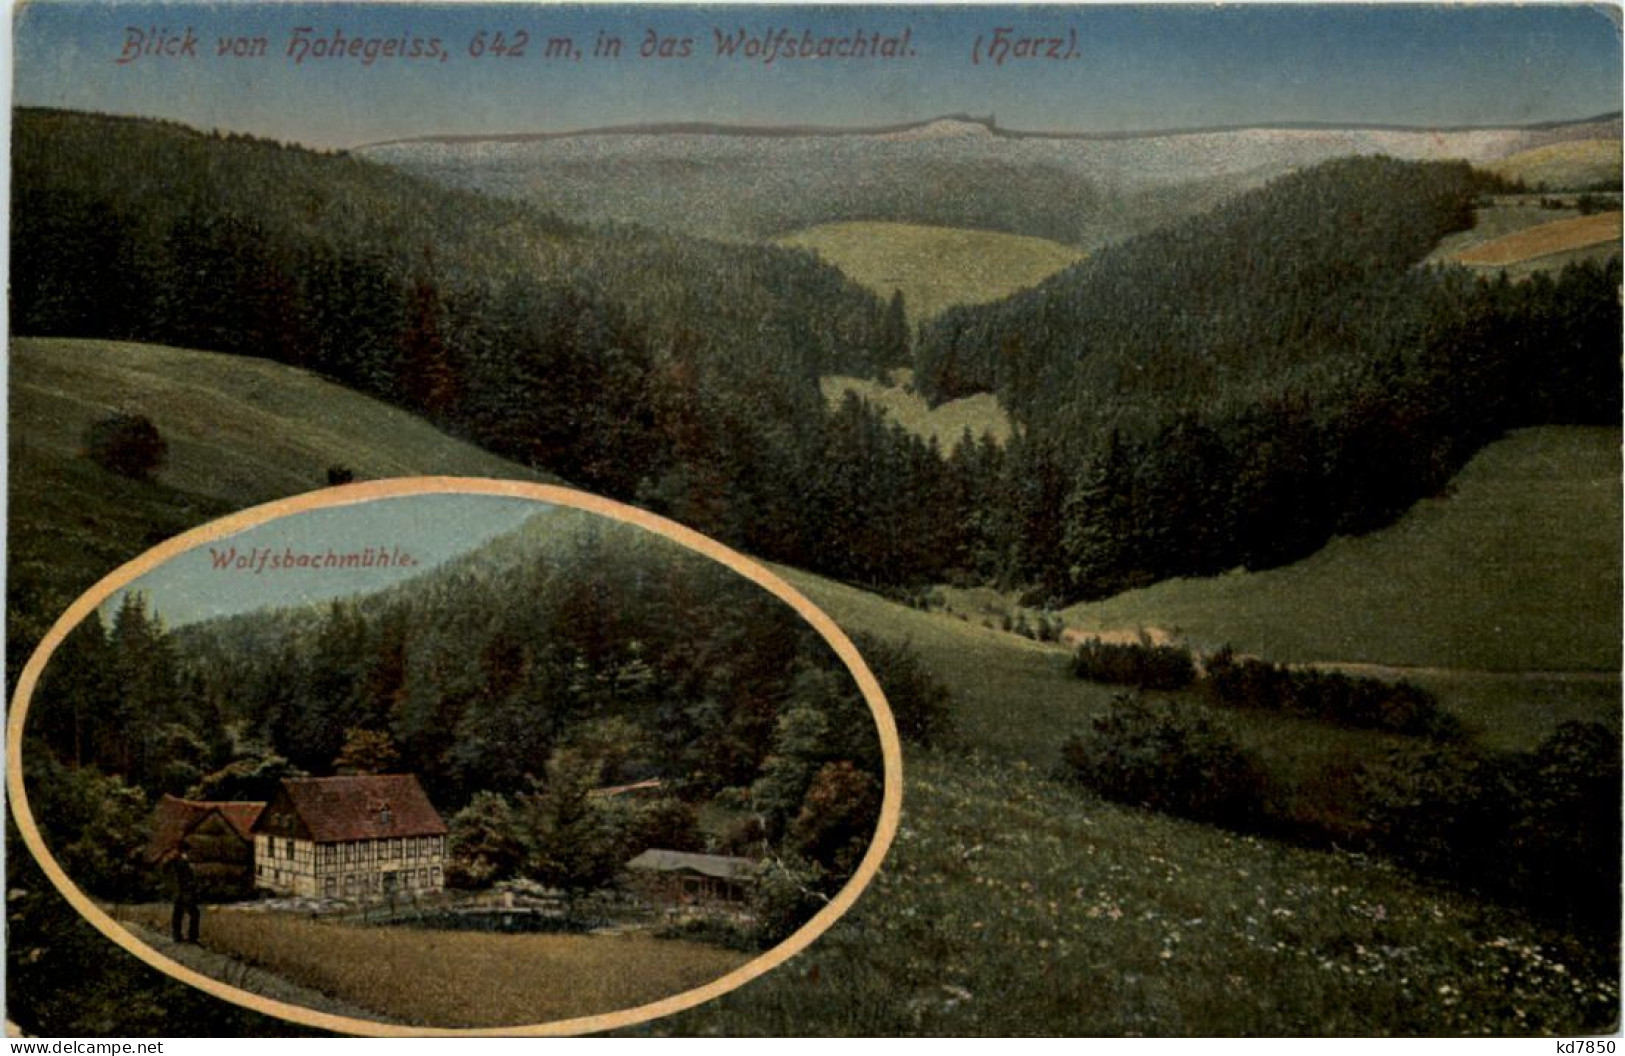 Blick Von Hohegeiss In Das Wolfsbachtal - Braunlage